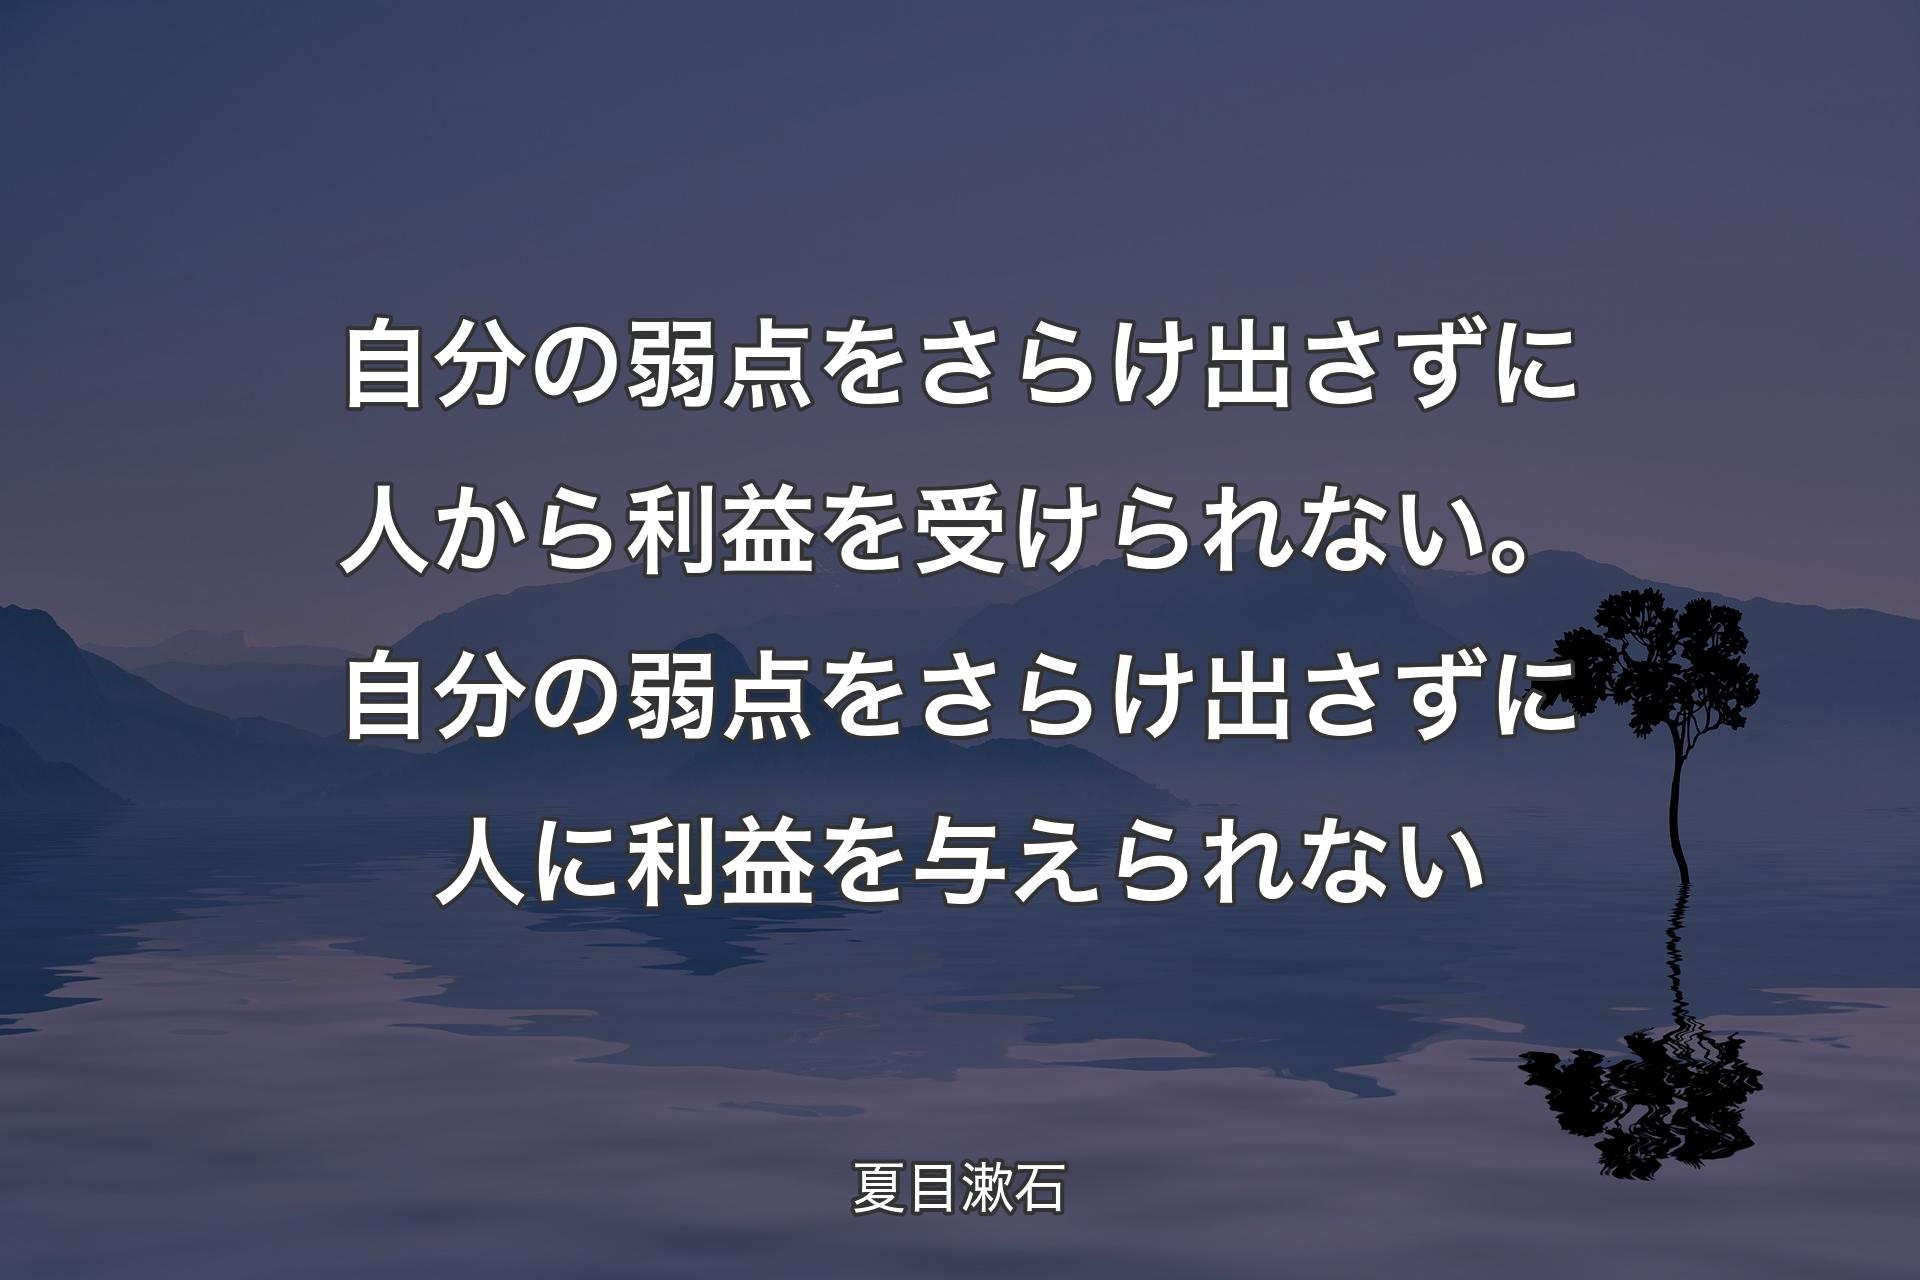 自分の弱点をさらけ出さずに人から利益を受けられない。自分の弱点をさらけ出さずに人に利益を与えられない - 夏目漱石